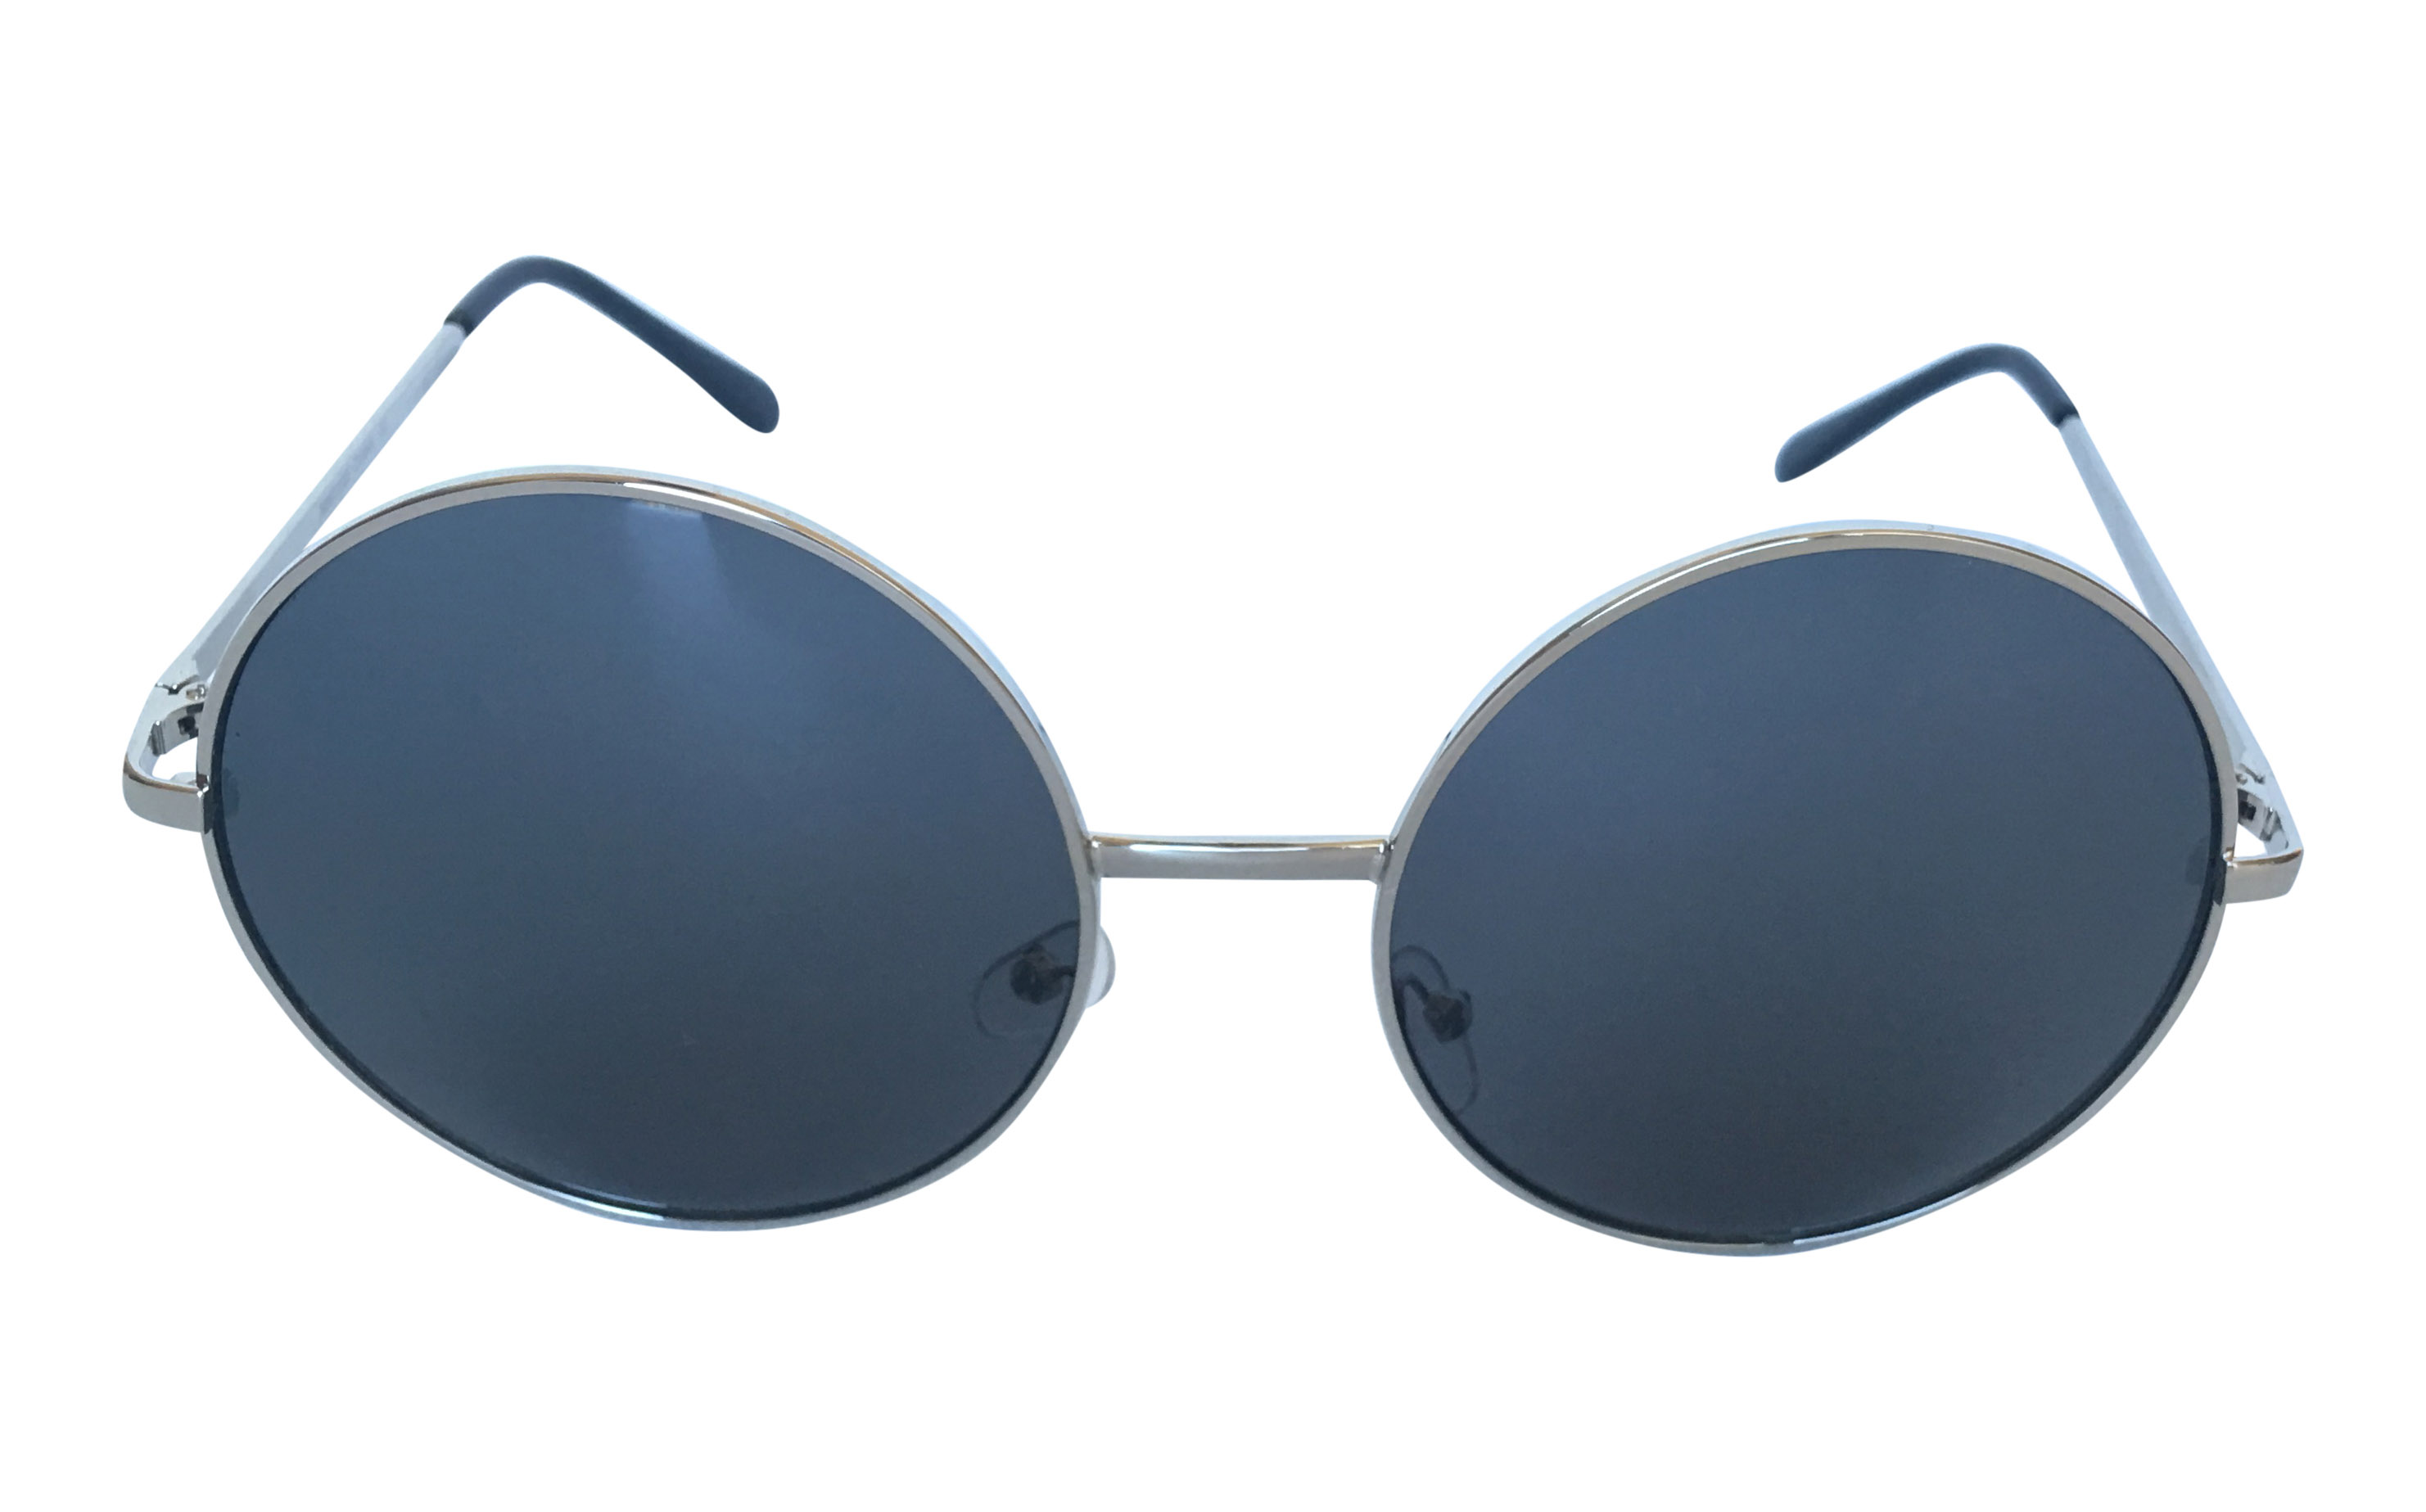 Stor sølvfarvet lennon solbrille - Design nr. s3307